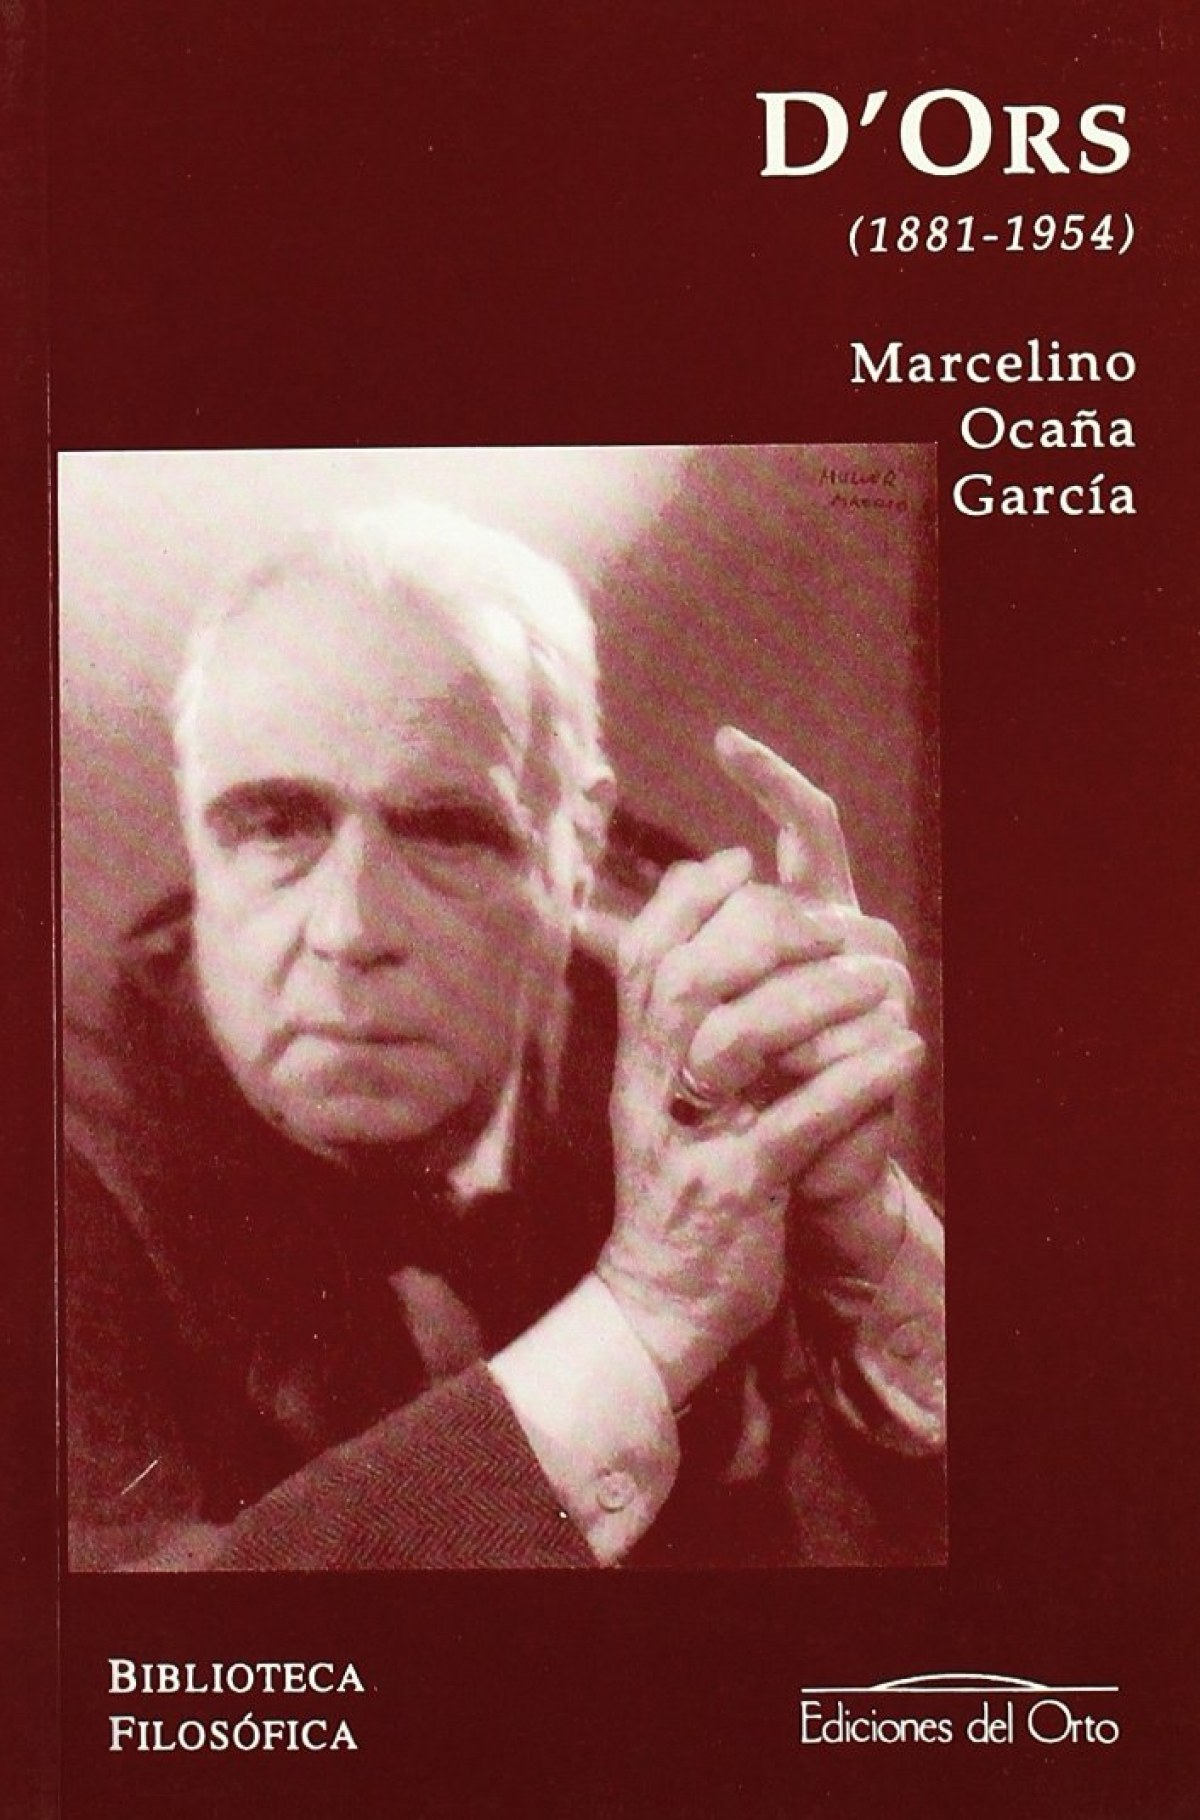 D'ors.eugenio/biblioteca filosofia - OcaÑa Garcia, Marcelino